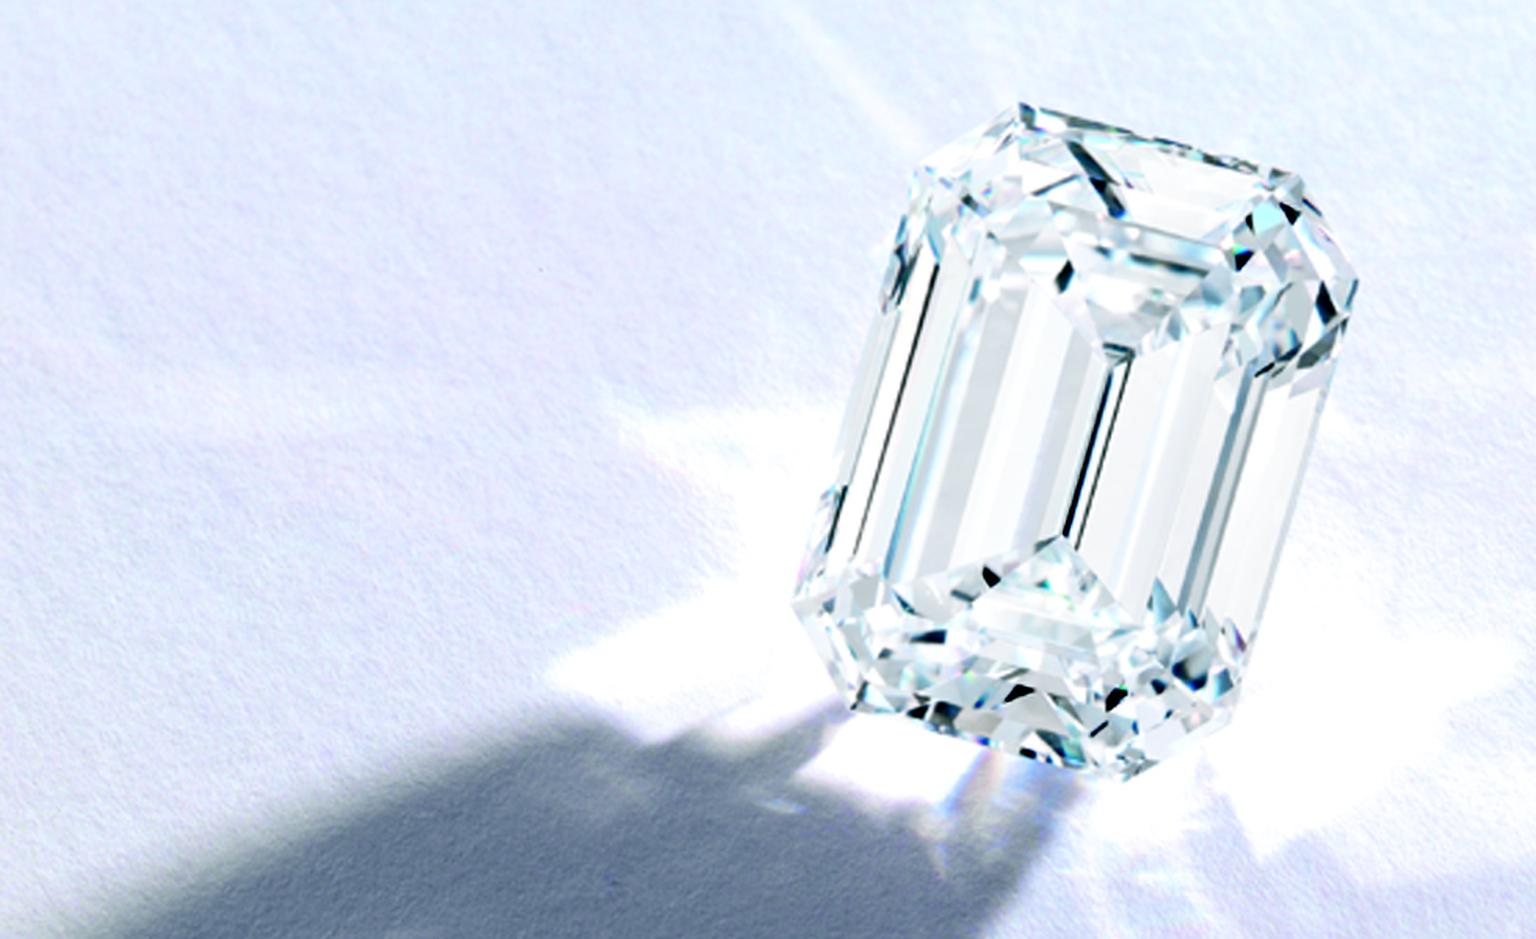 Lot 383 A Magnificent Emerald-Cut Diamond 30.52 carat DVVF 1  Est. $3/4 million. SOLD FOR $3,386,500